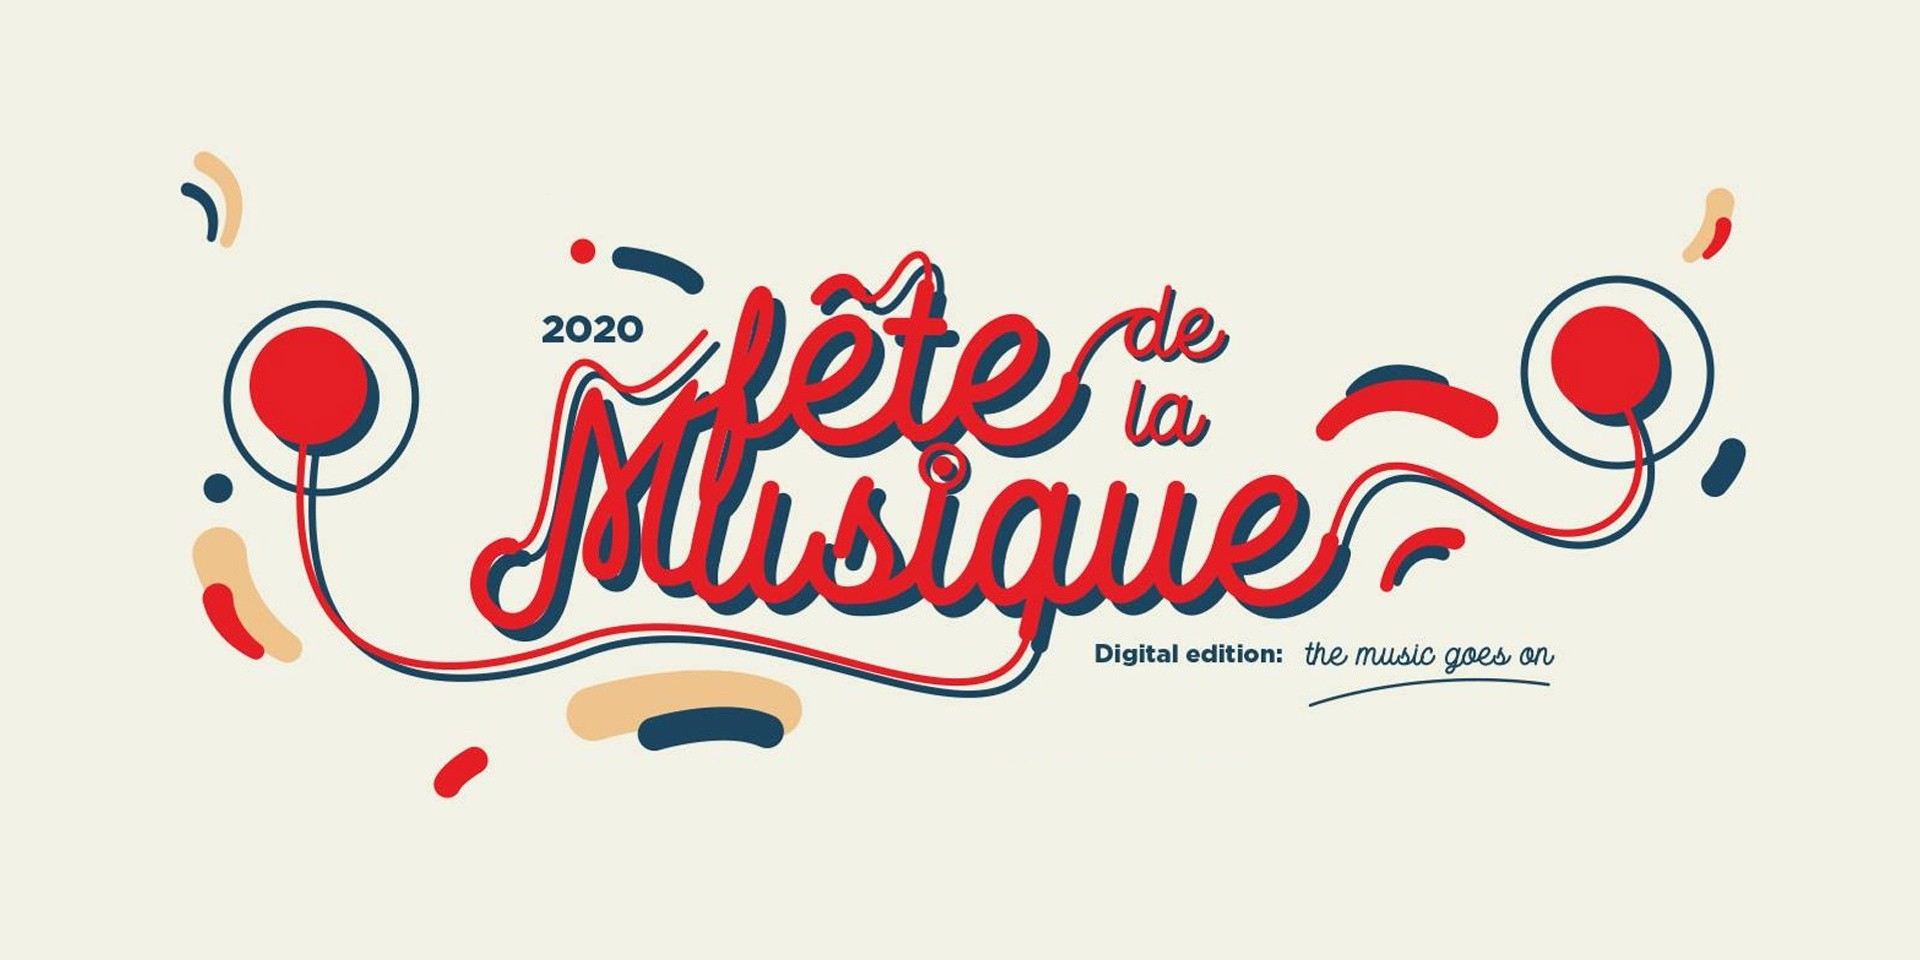 Fête de la Musique Philippines to push through with 2020 festivities online